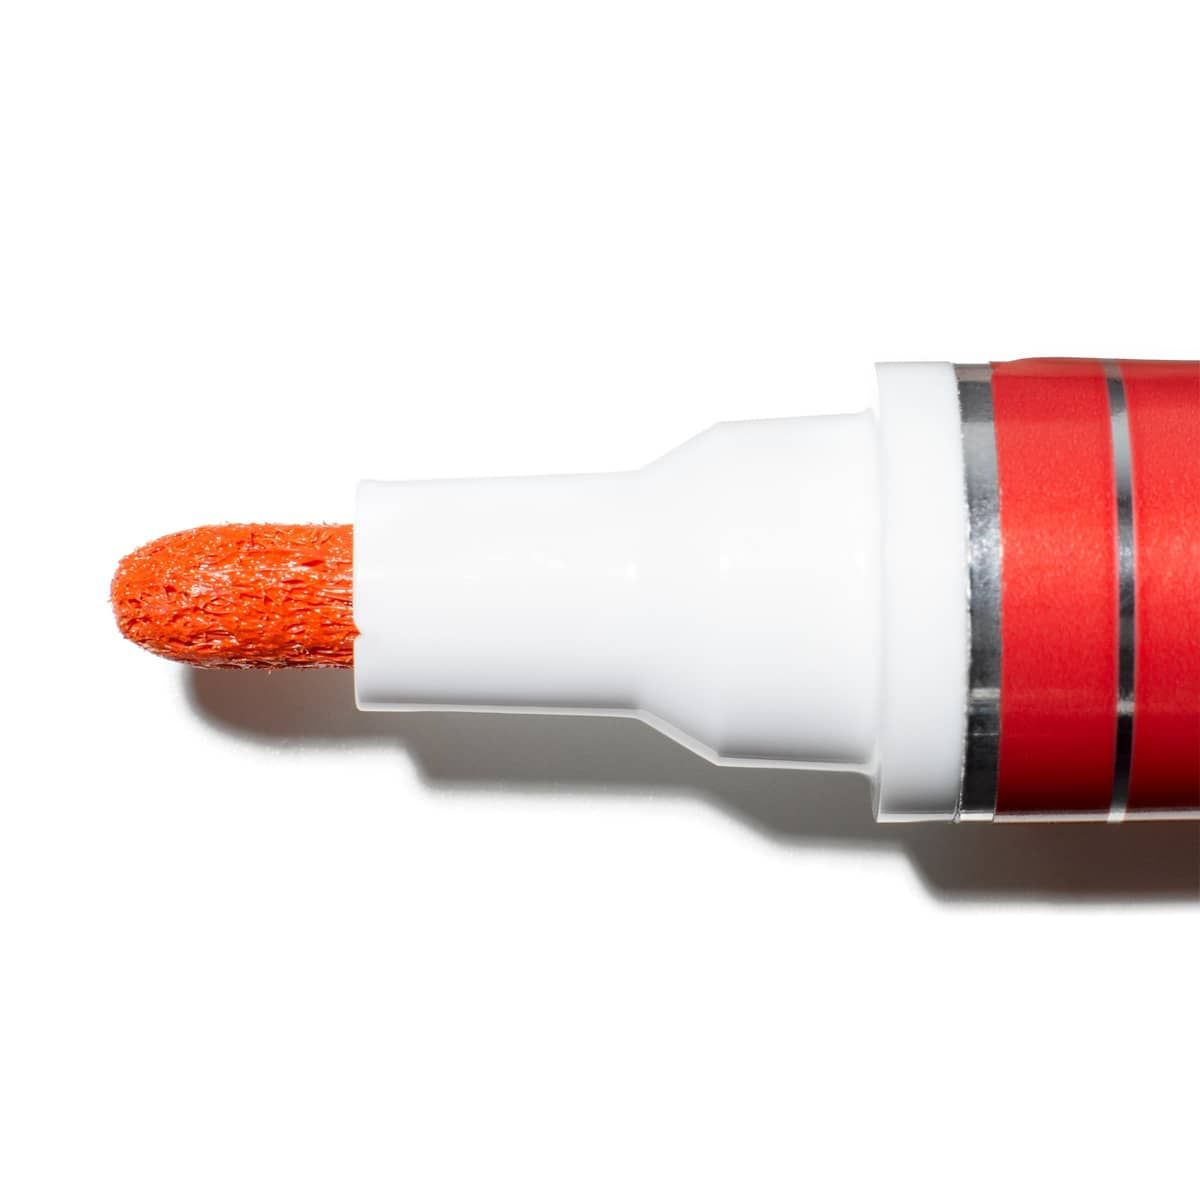 Krink K-42 Bullet Tip Alcohol Paint Markers - Orange Tip